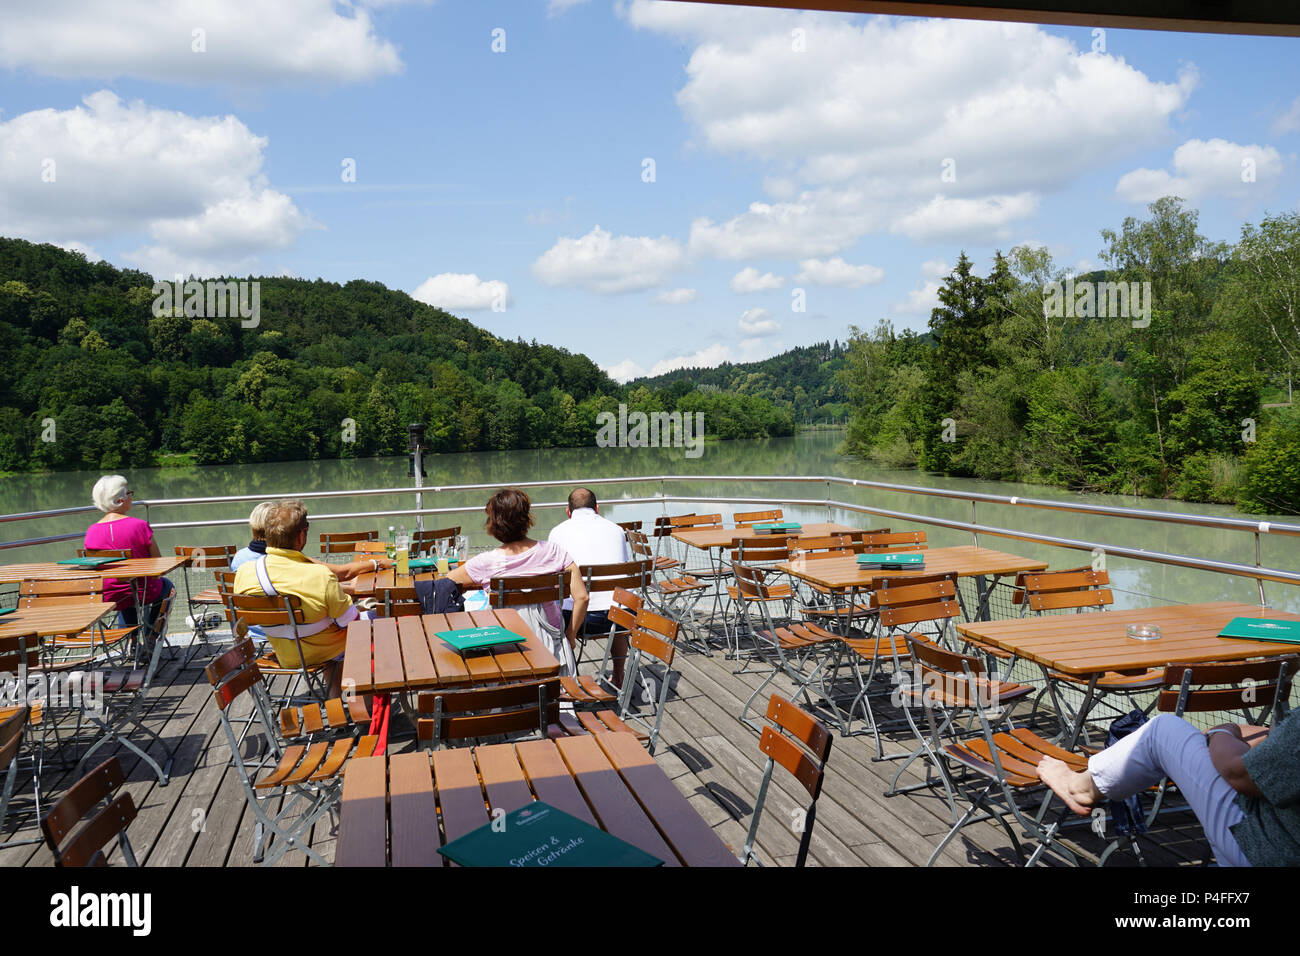 Vornbacher Enge, River Inn, excursion en bateau à partir de Paris à Passau sur la rivière Inn, Autriche et Allemagne, Europe Banque D'Images